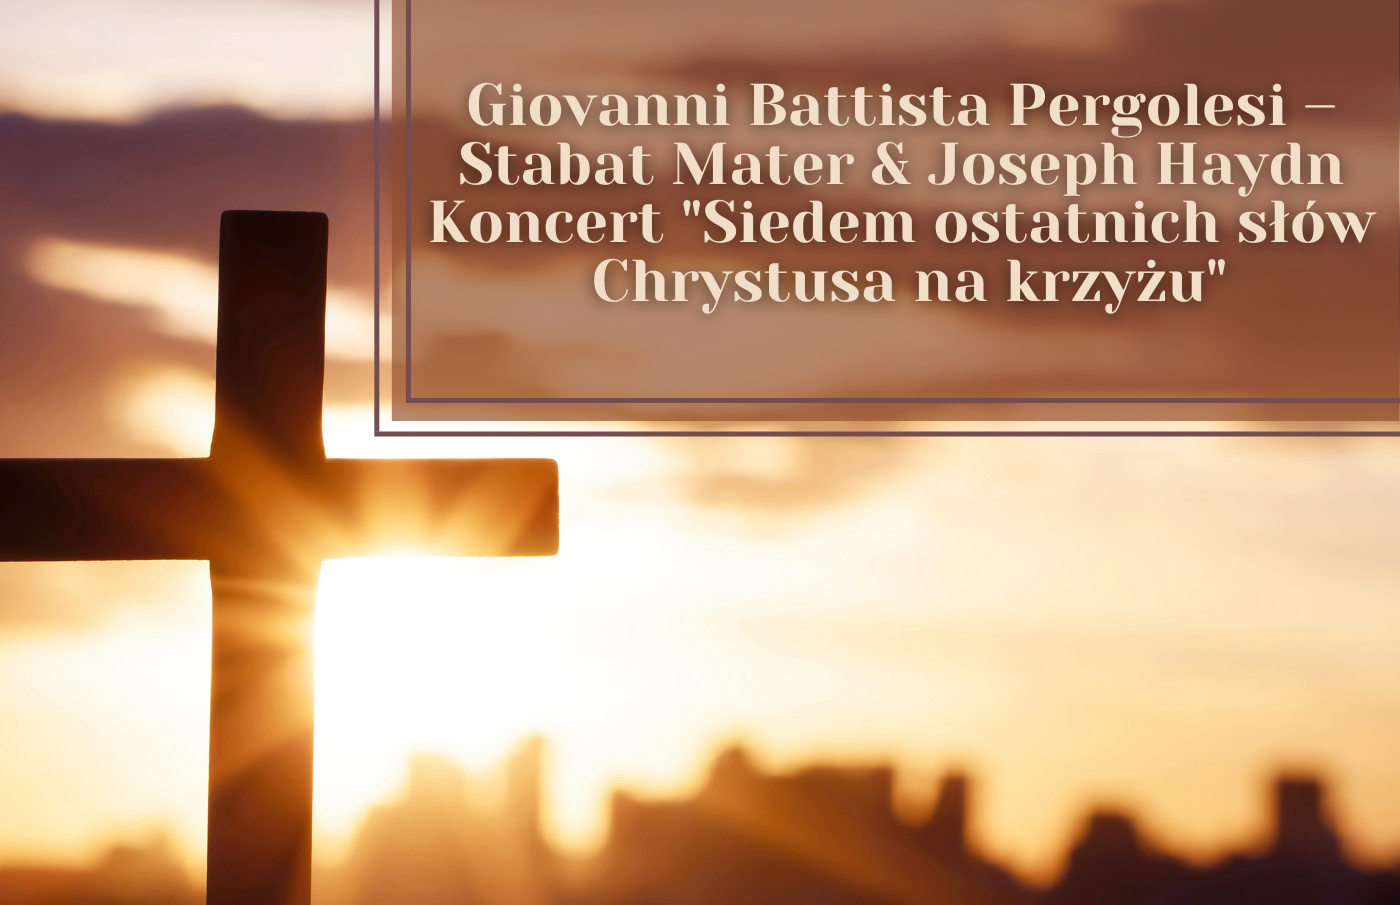 Concerto "Le sette ultime parole di Cristo sulla croce"